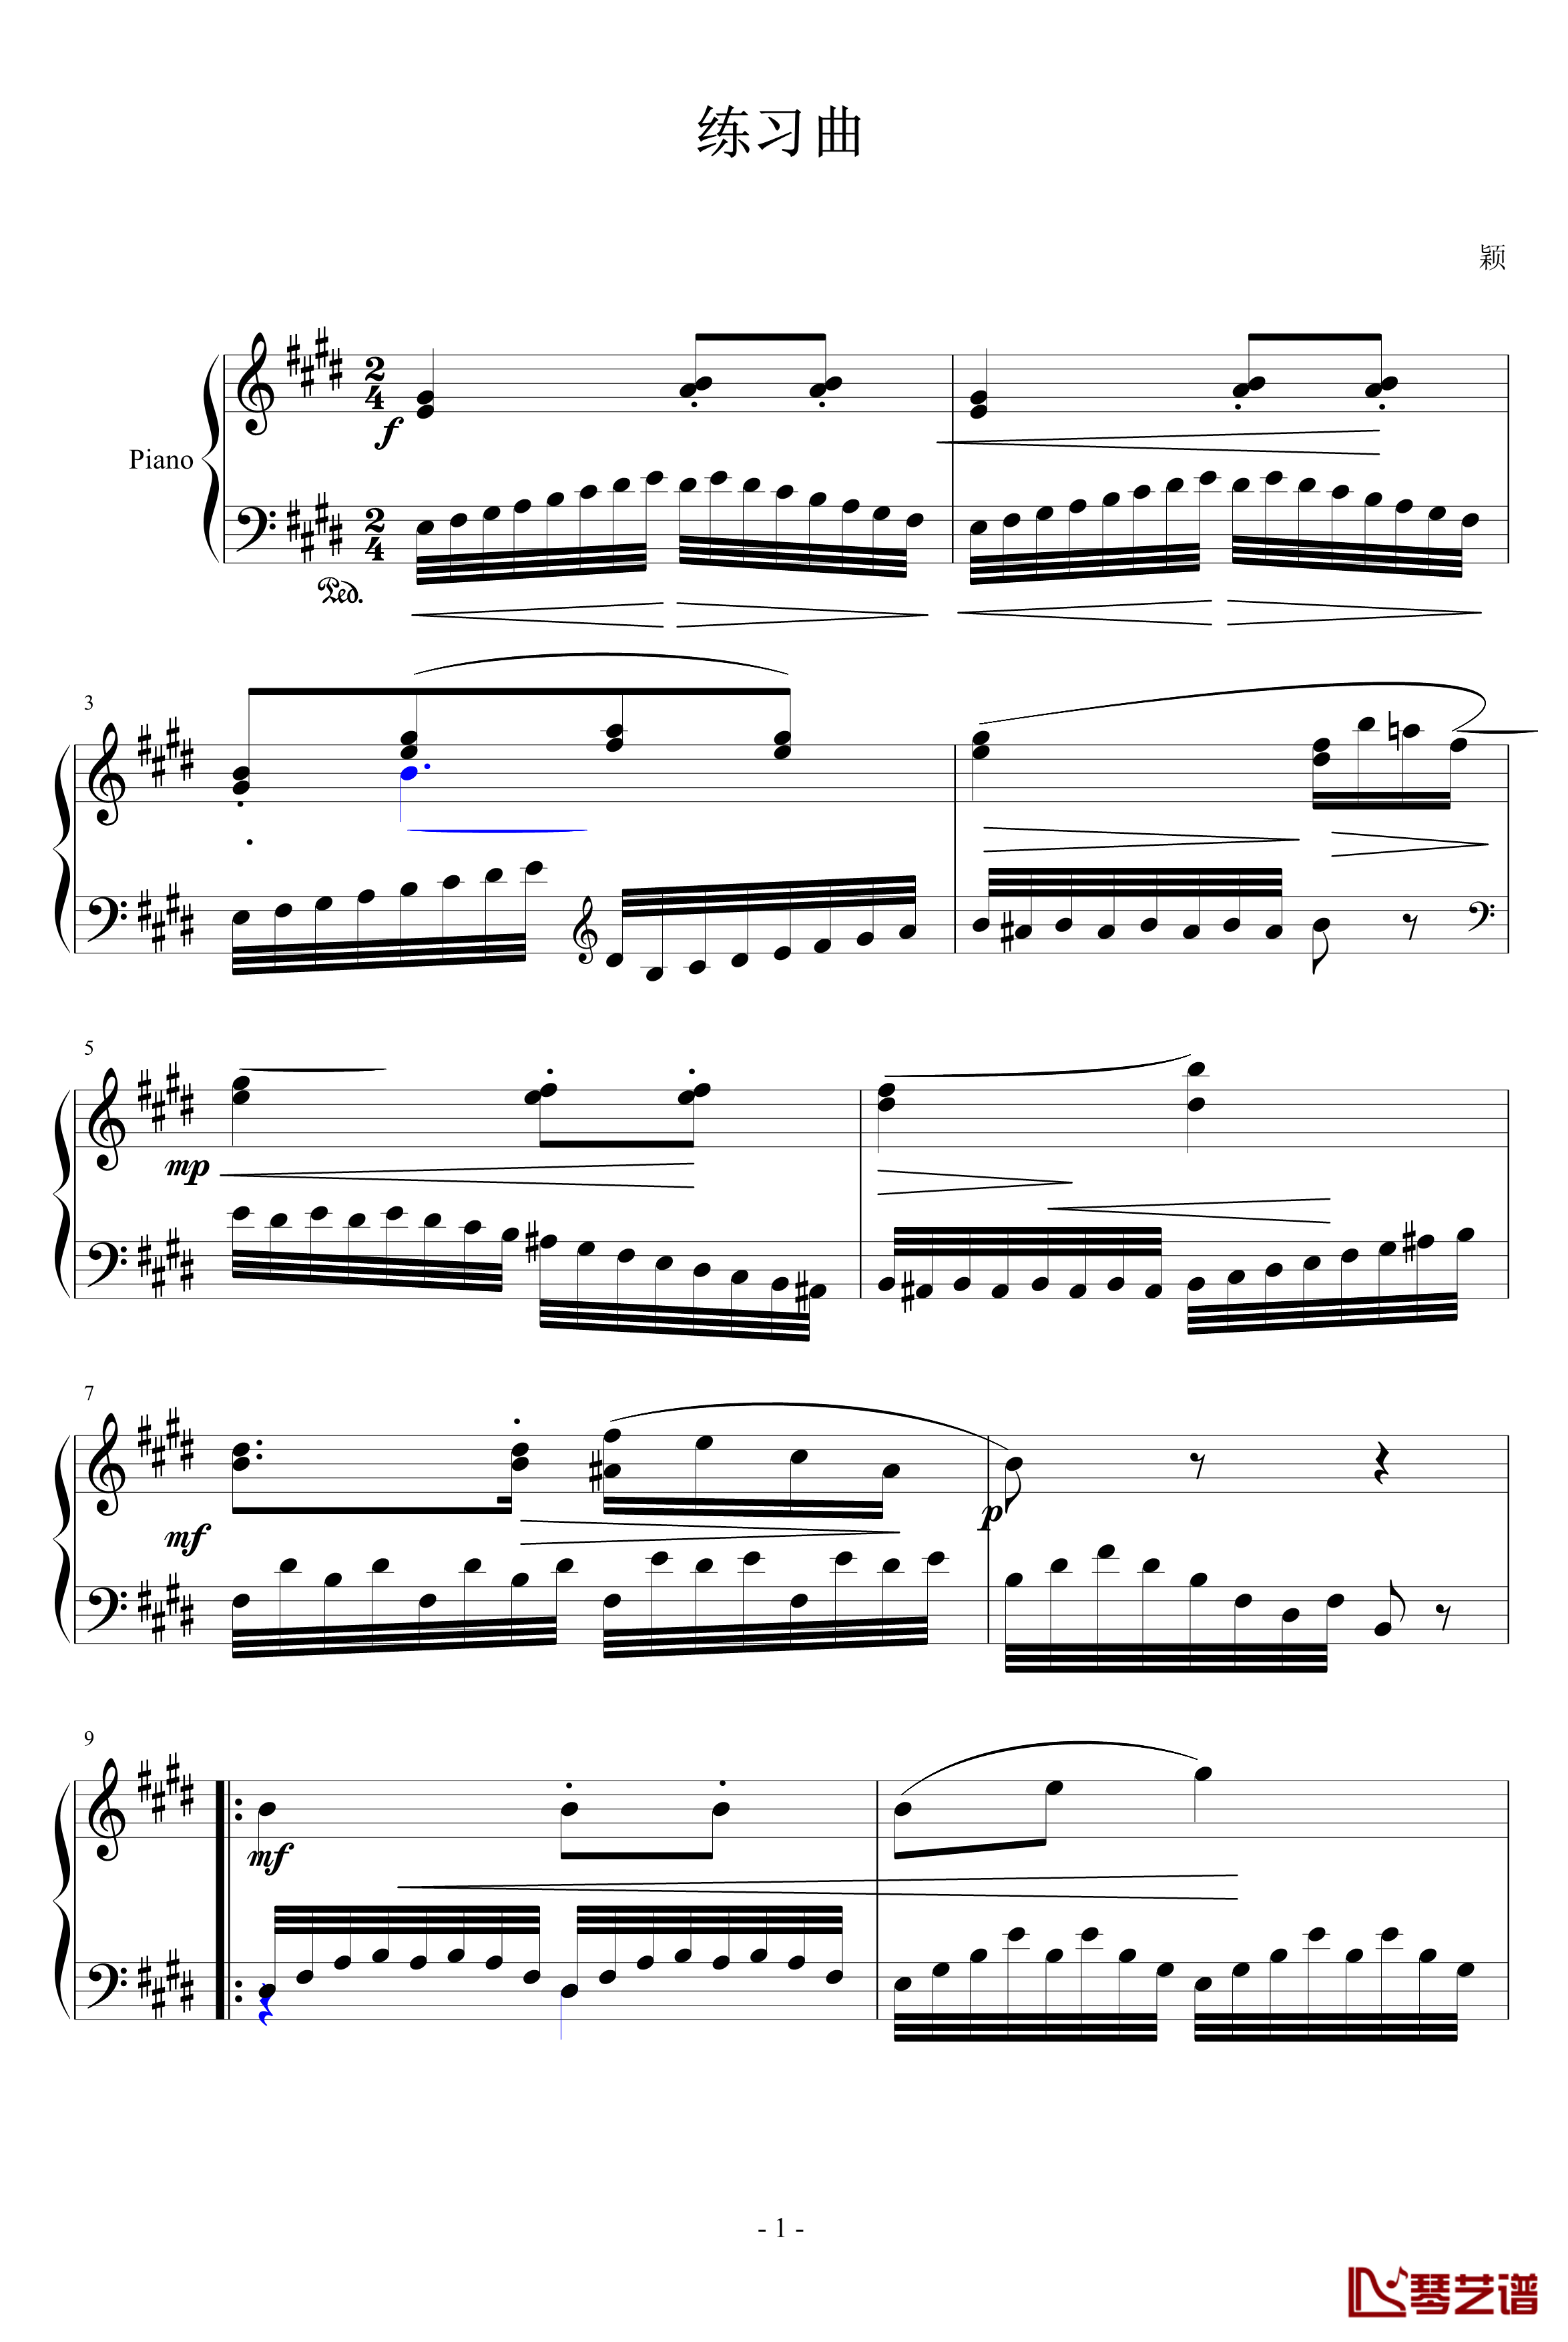 练习曲钢琴谱-未知分类1